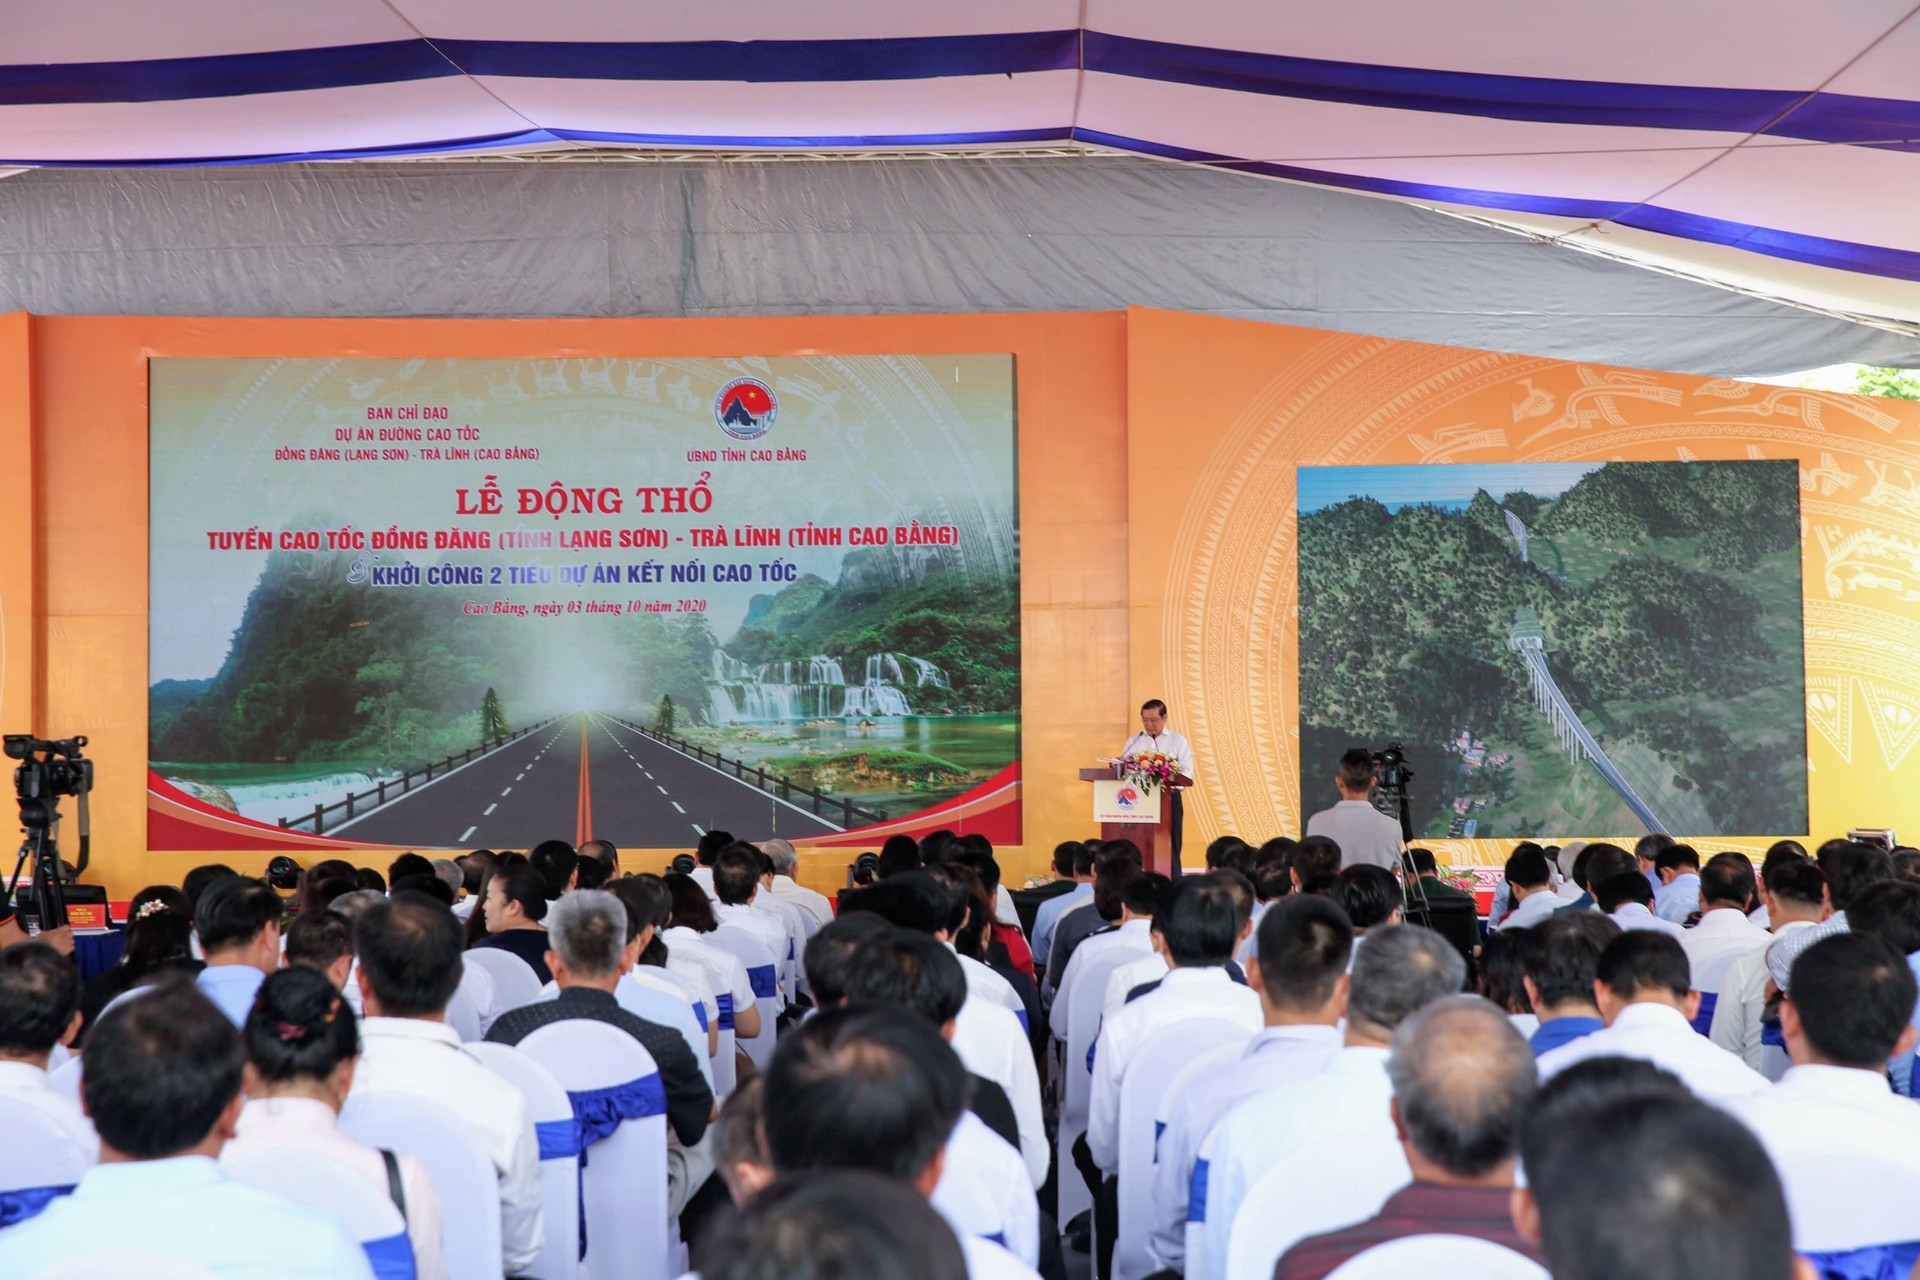 Lễ động thổ là một bước tiến quan trọng thể hiện khát vọng, quyết tâm cao độ để thực hiện dự án của tỉnh Cao Bằng